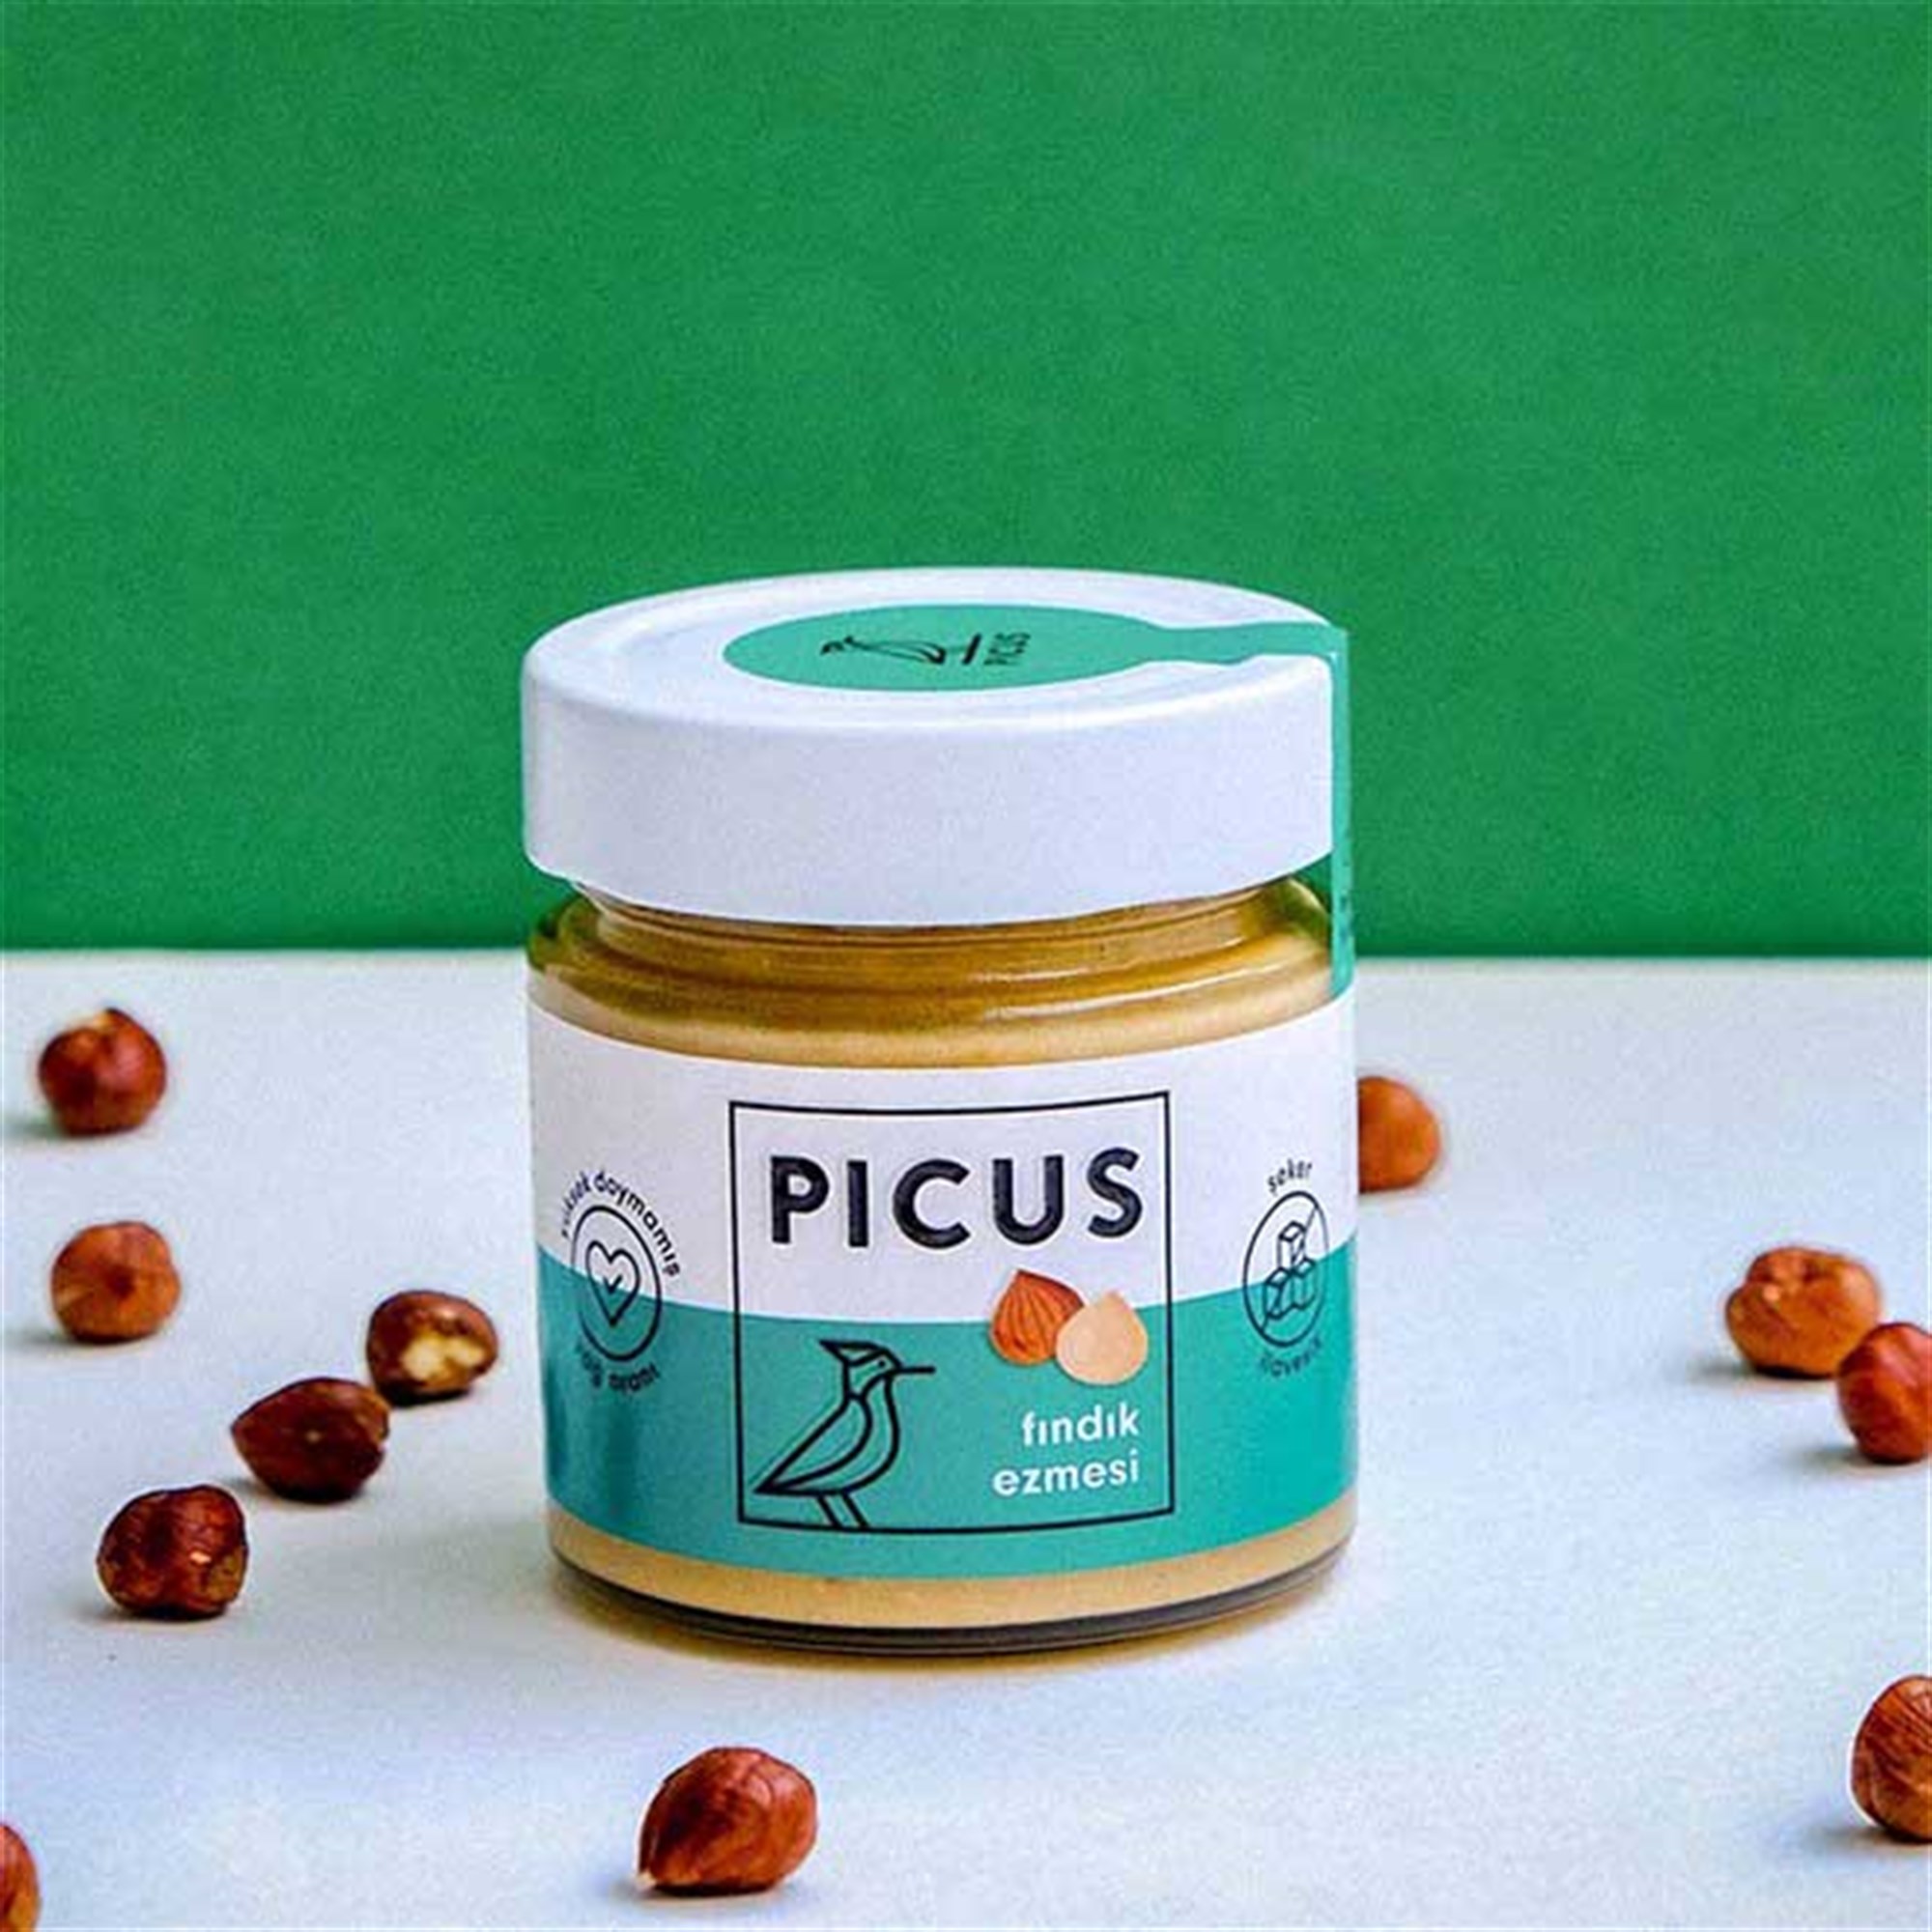 Picus Tanışma Paketi | Sağlıklı & Katkı Maddesiz | Picus